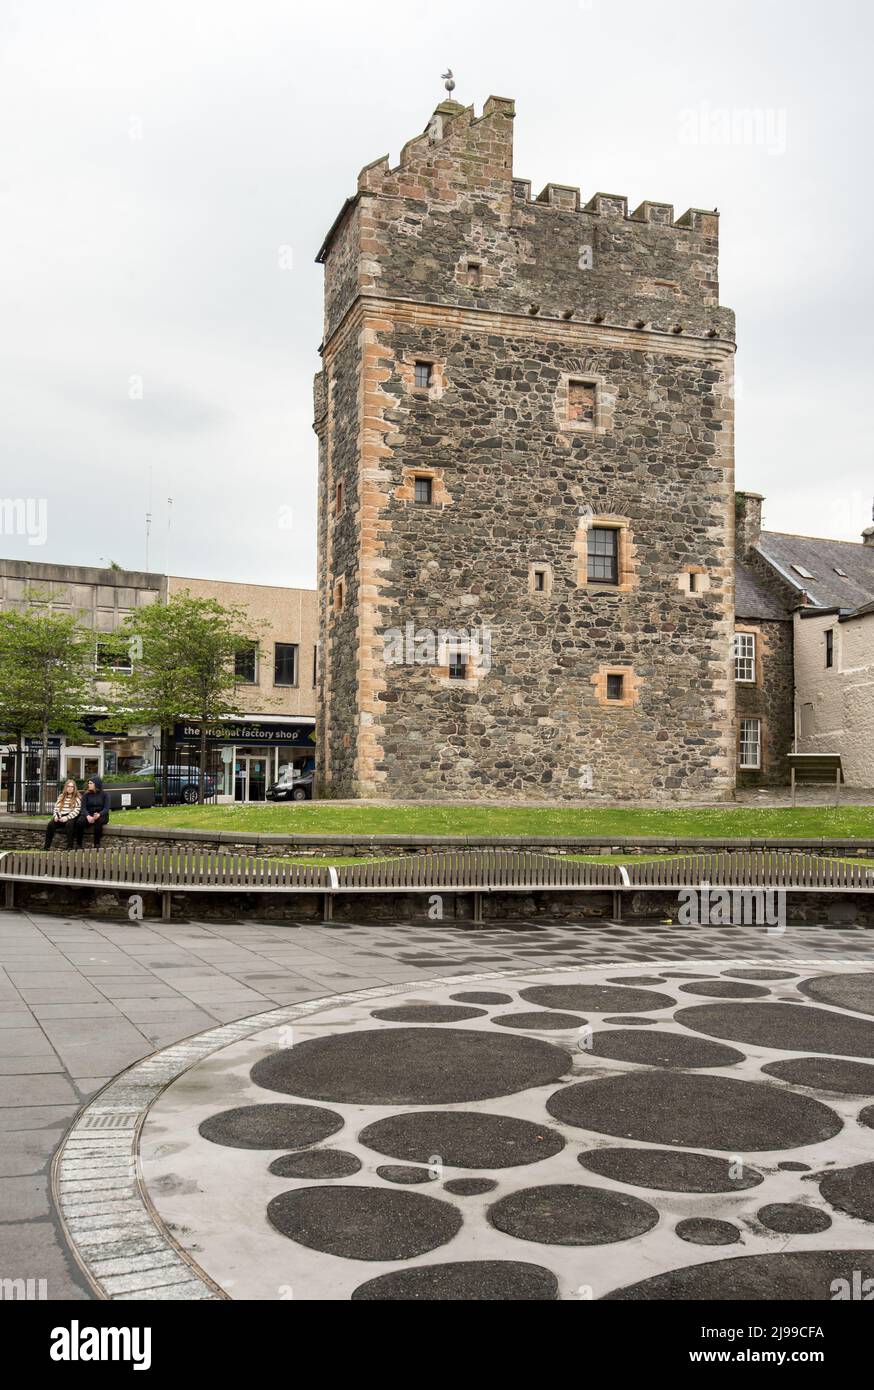 Le château de St John, également connu sous le nom de château de Stranraer, se trouve dans le centre de Stranraer, à Dumfries et Galloway Banque D'Images